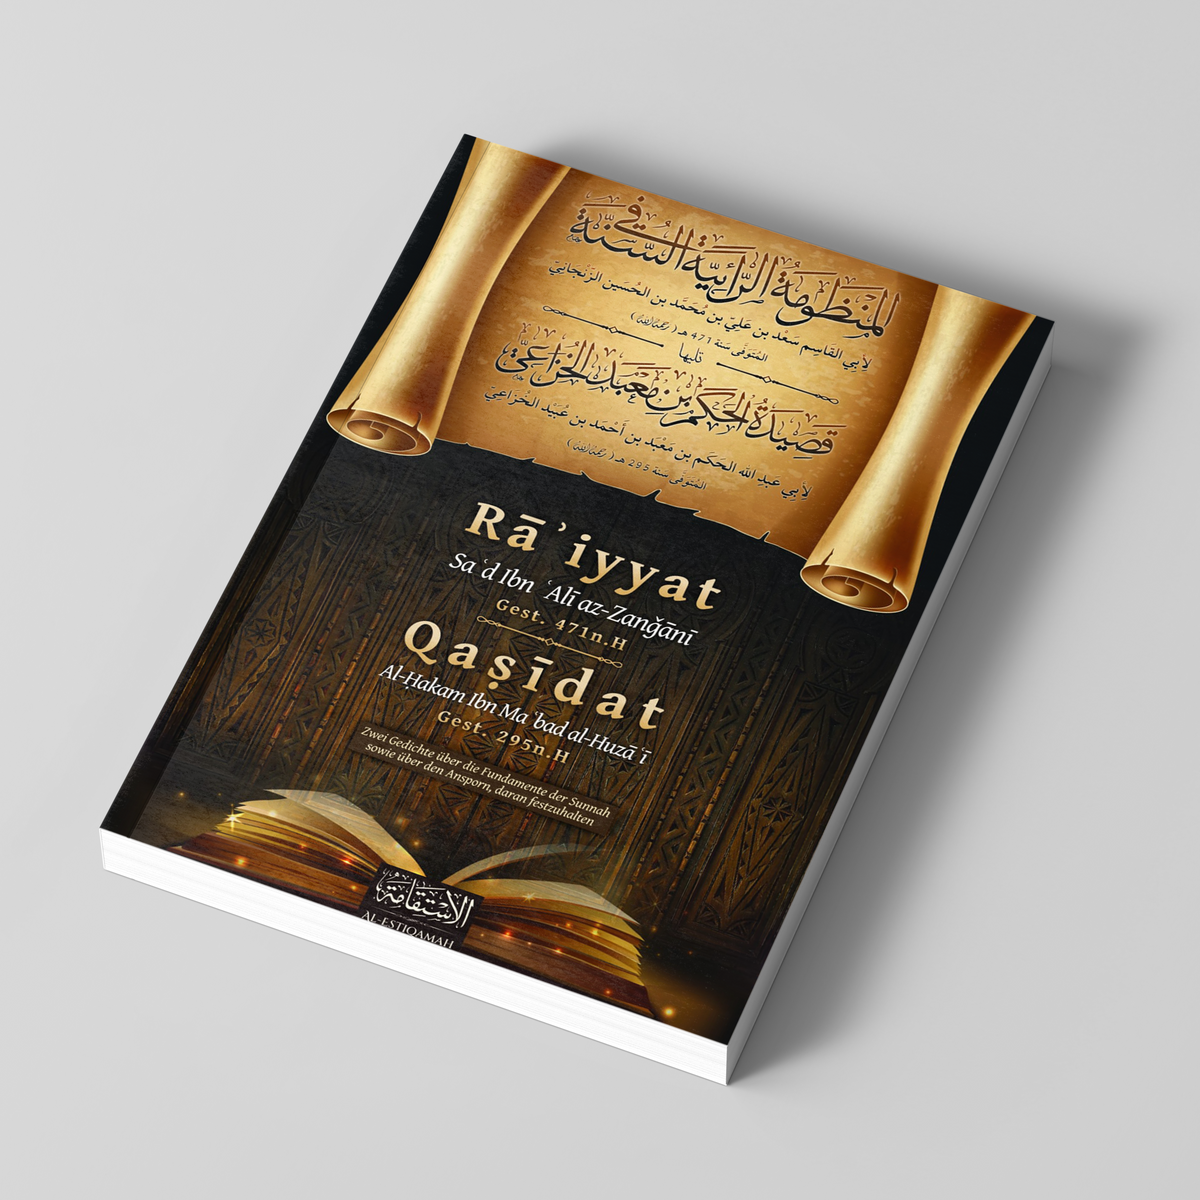 Ra'iyyat et Qasidat - Deux poèmes sur les fondements de la Sunna